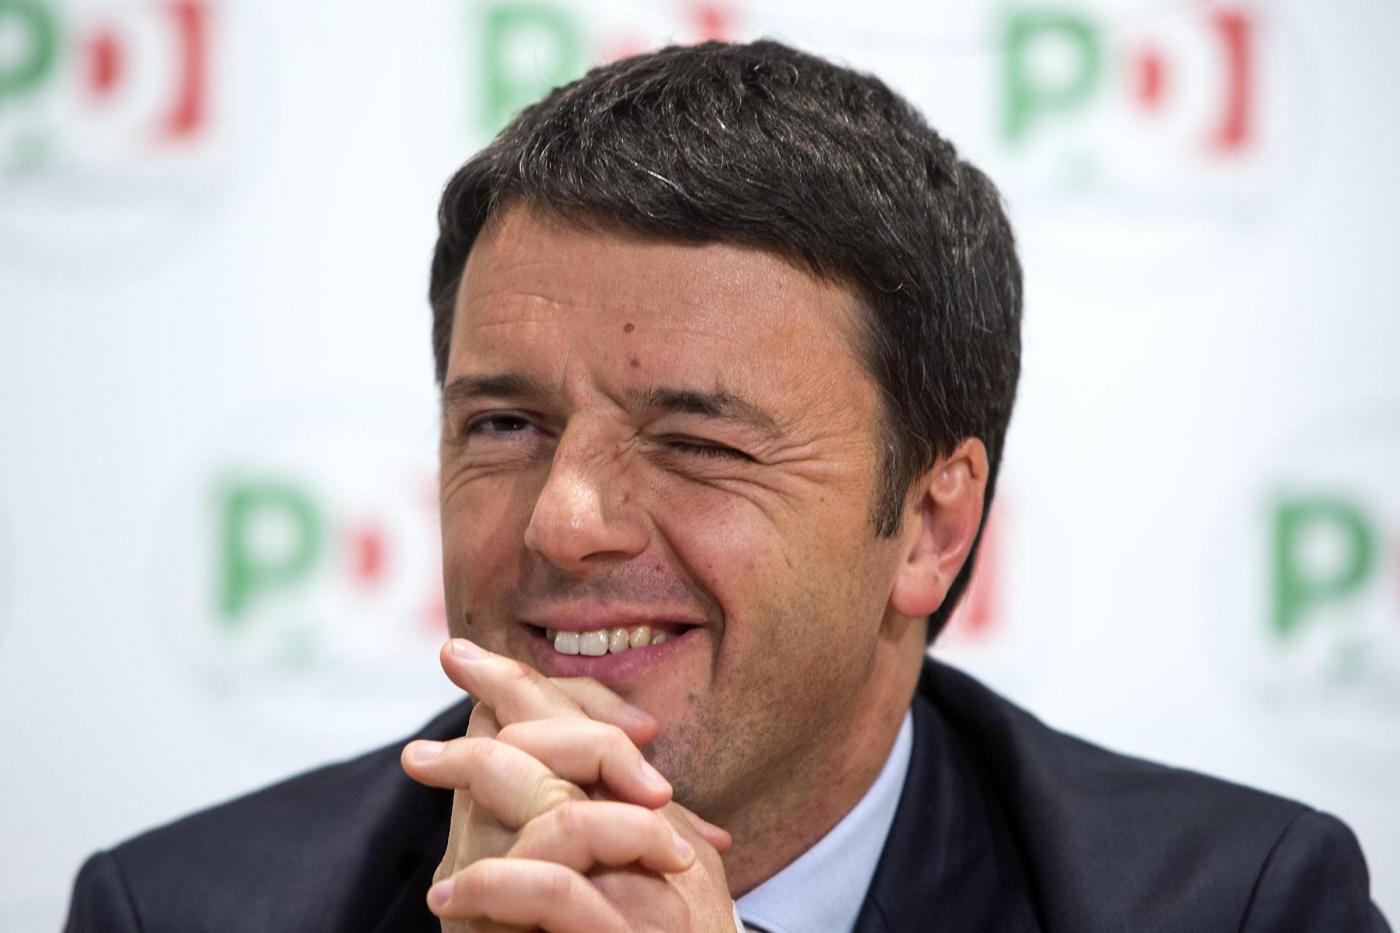 PD - Conferenza stampa di Matteo Renzi